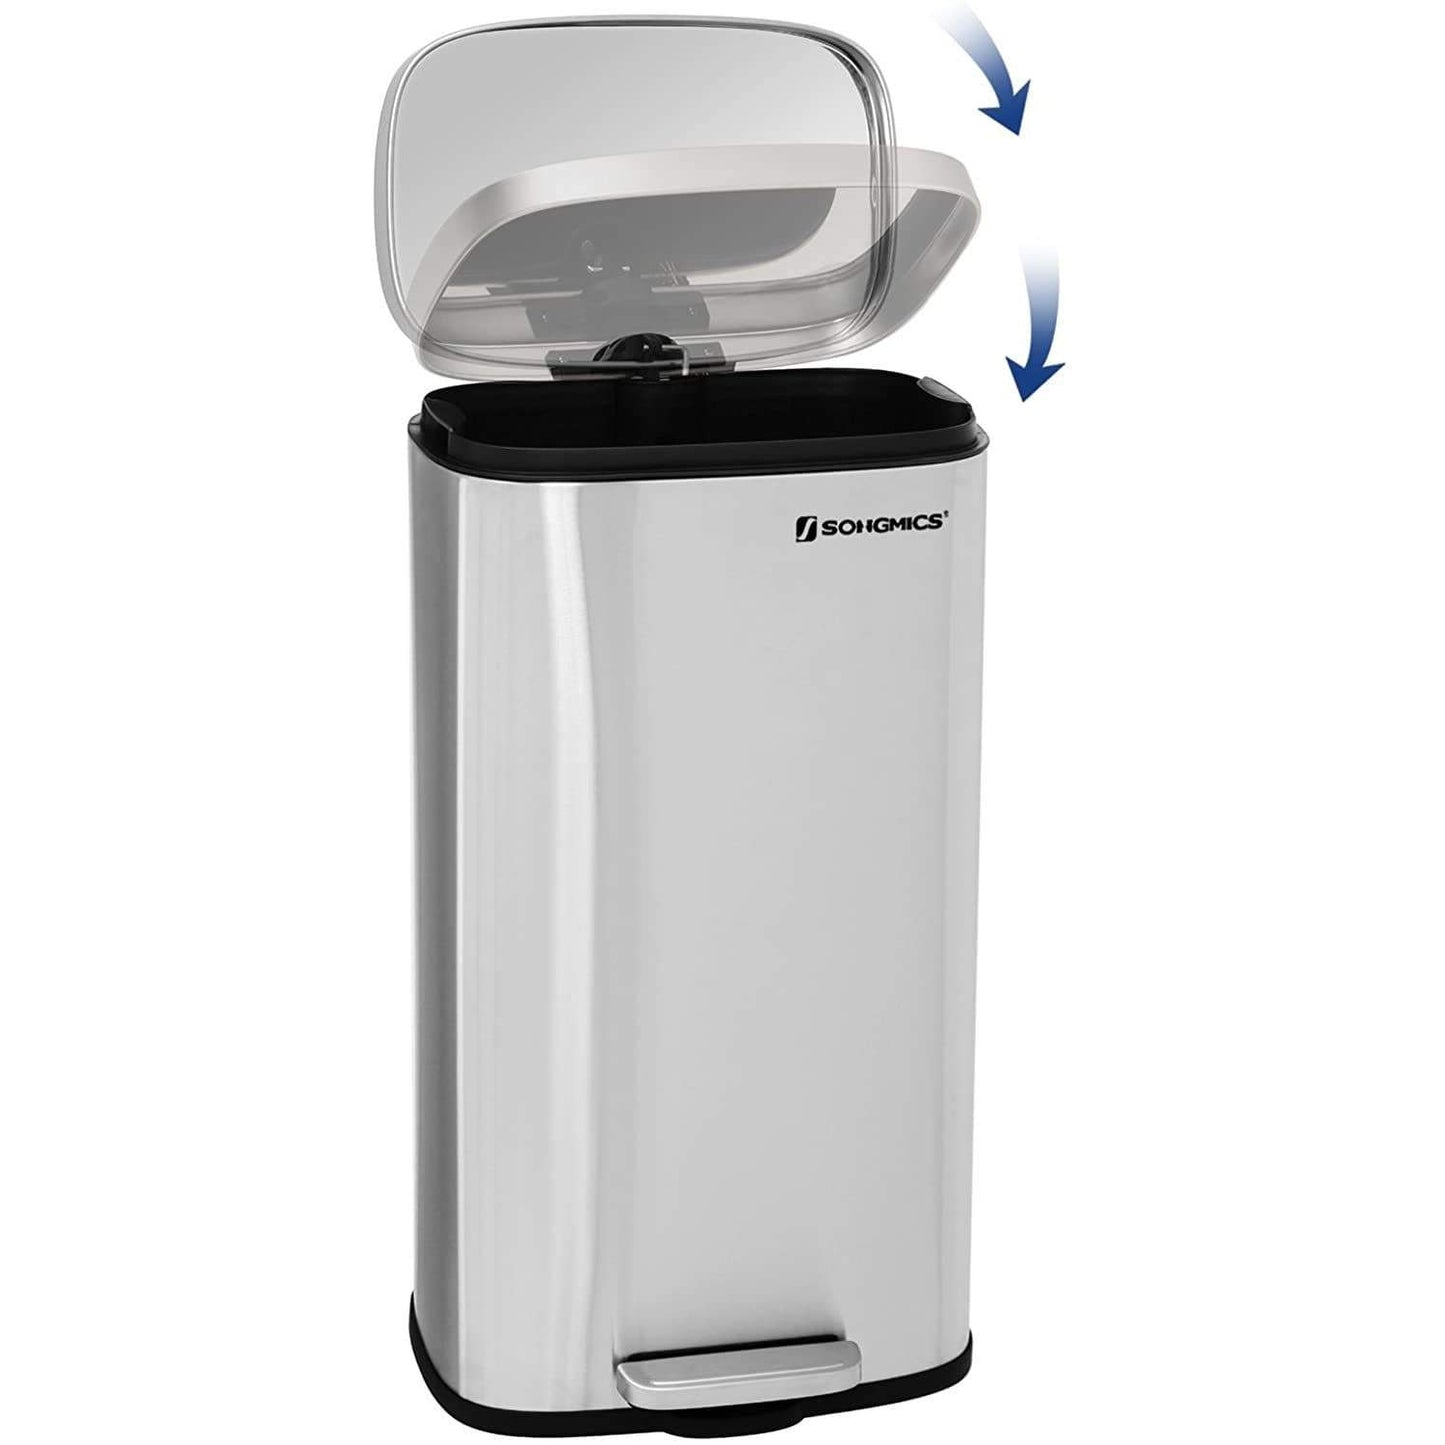 Nancy's Waste Bin 30L - Pedal bin - Stainless Steel - Waste separation system